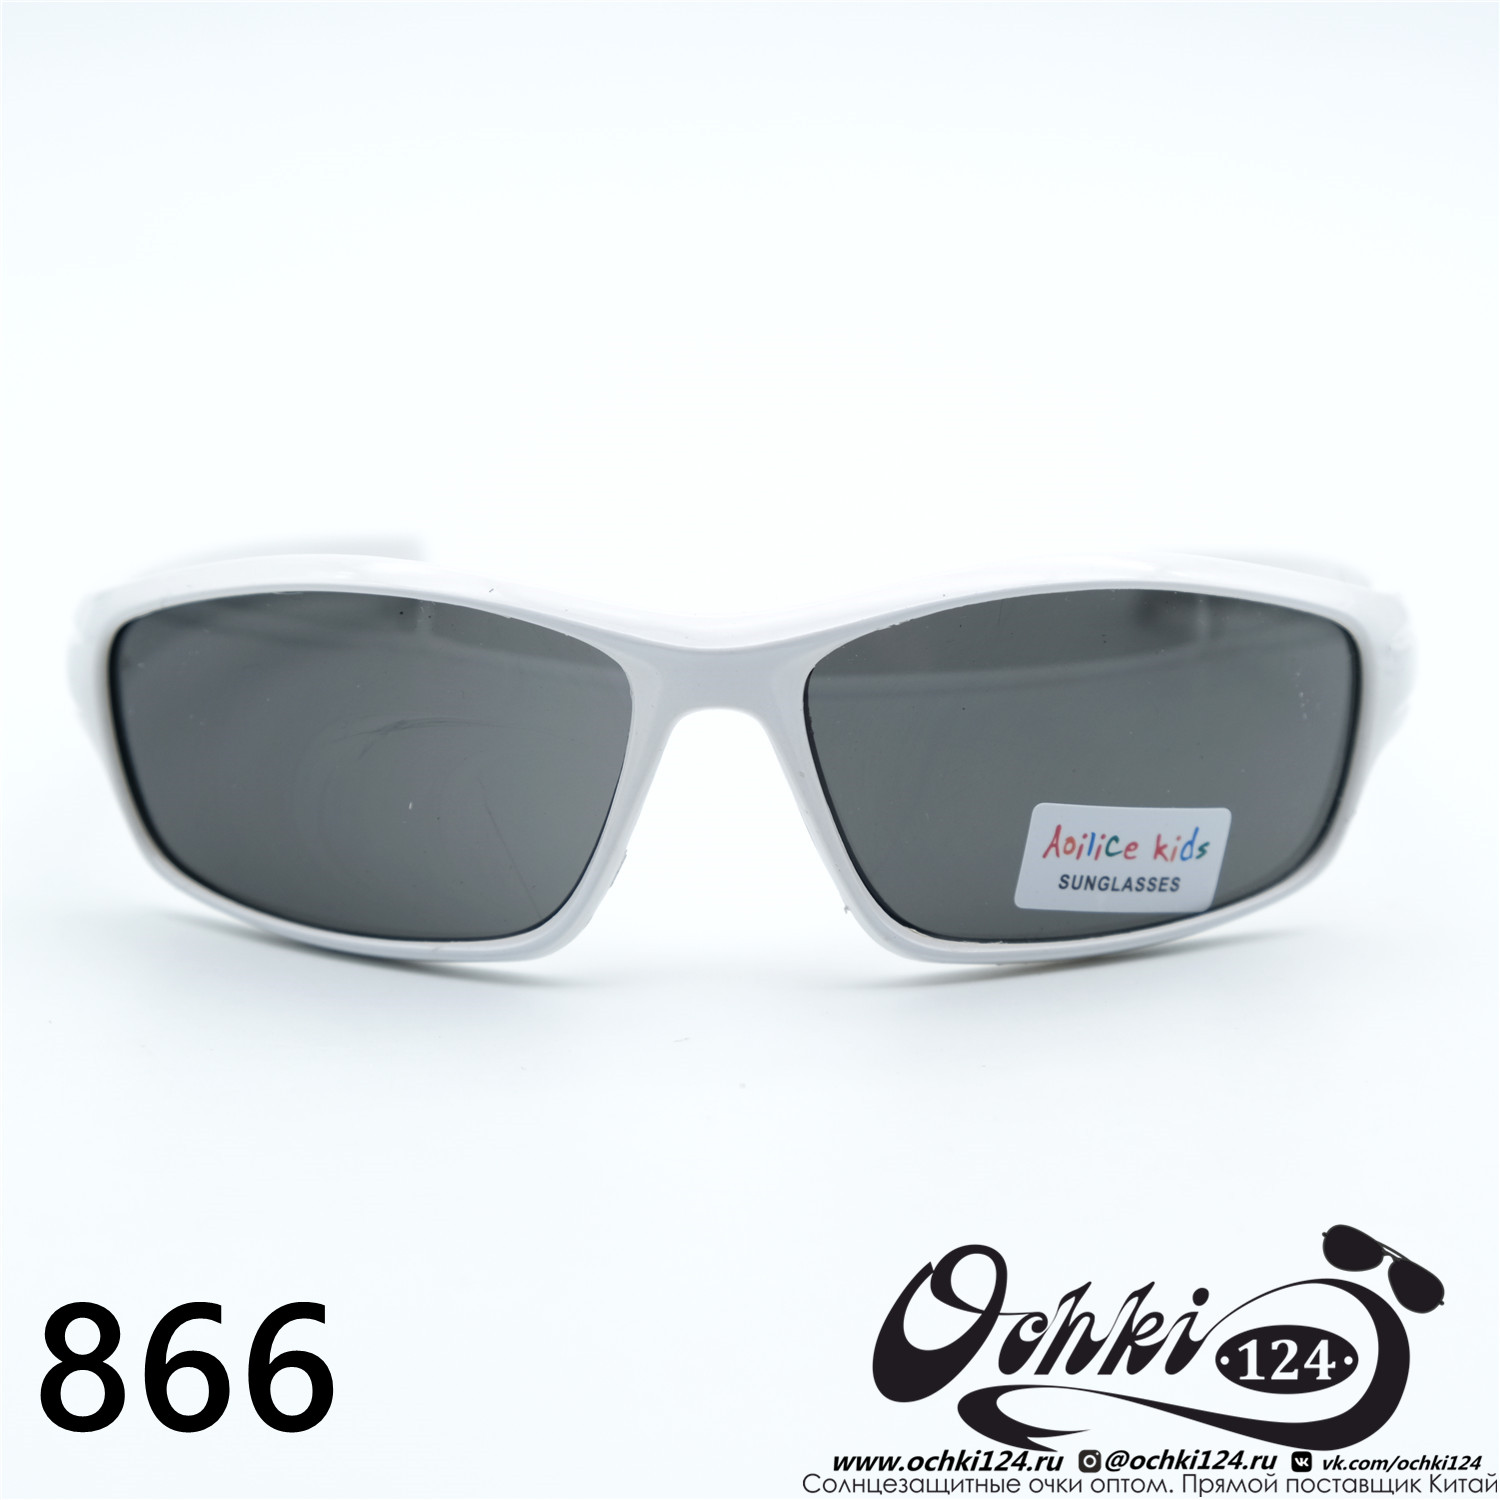  Солнцезащитные очки картинка 2023 Детские Узкие и длинные  866-C2 